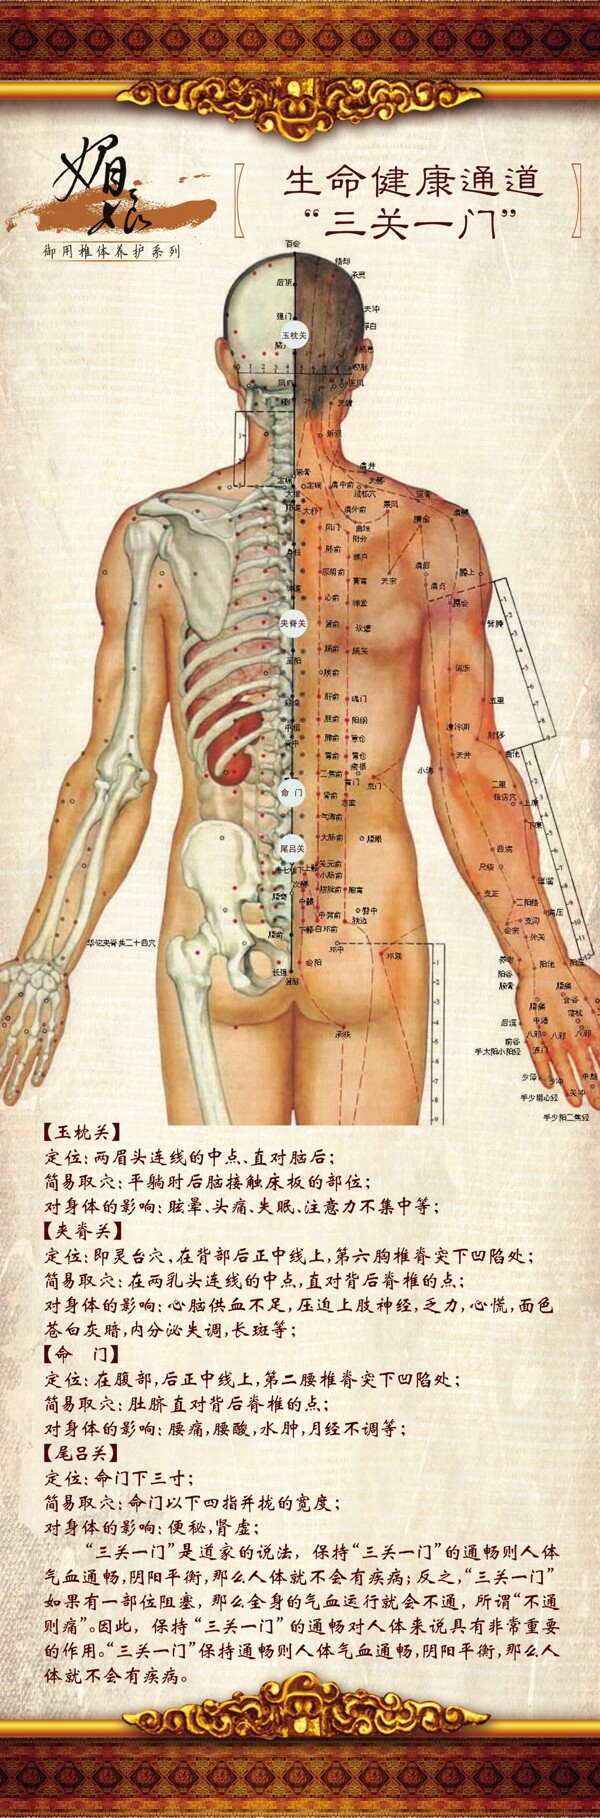 脊椎养生图图片